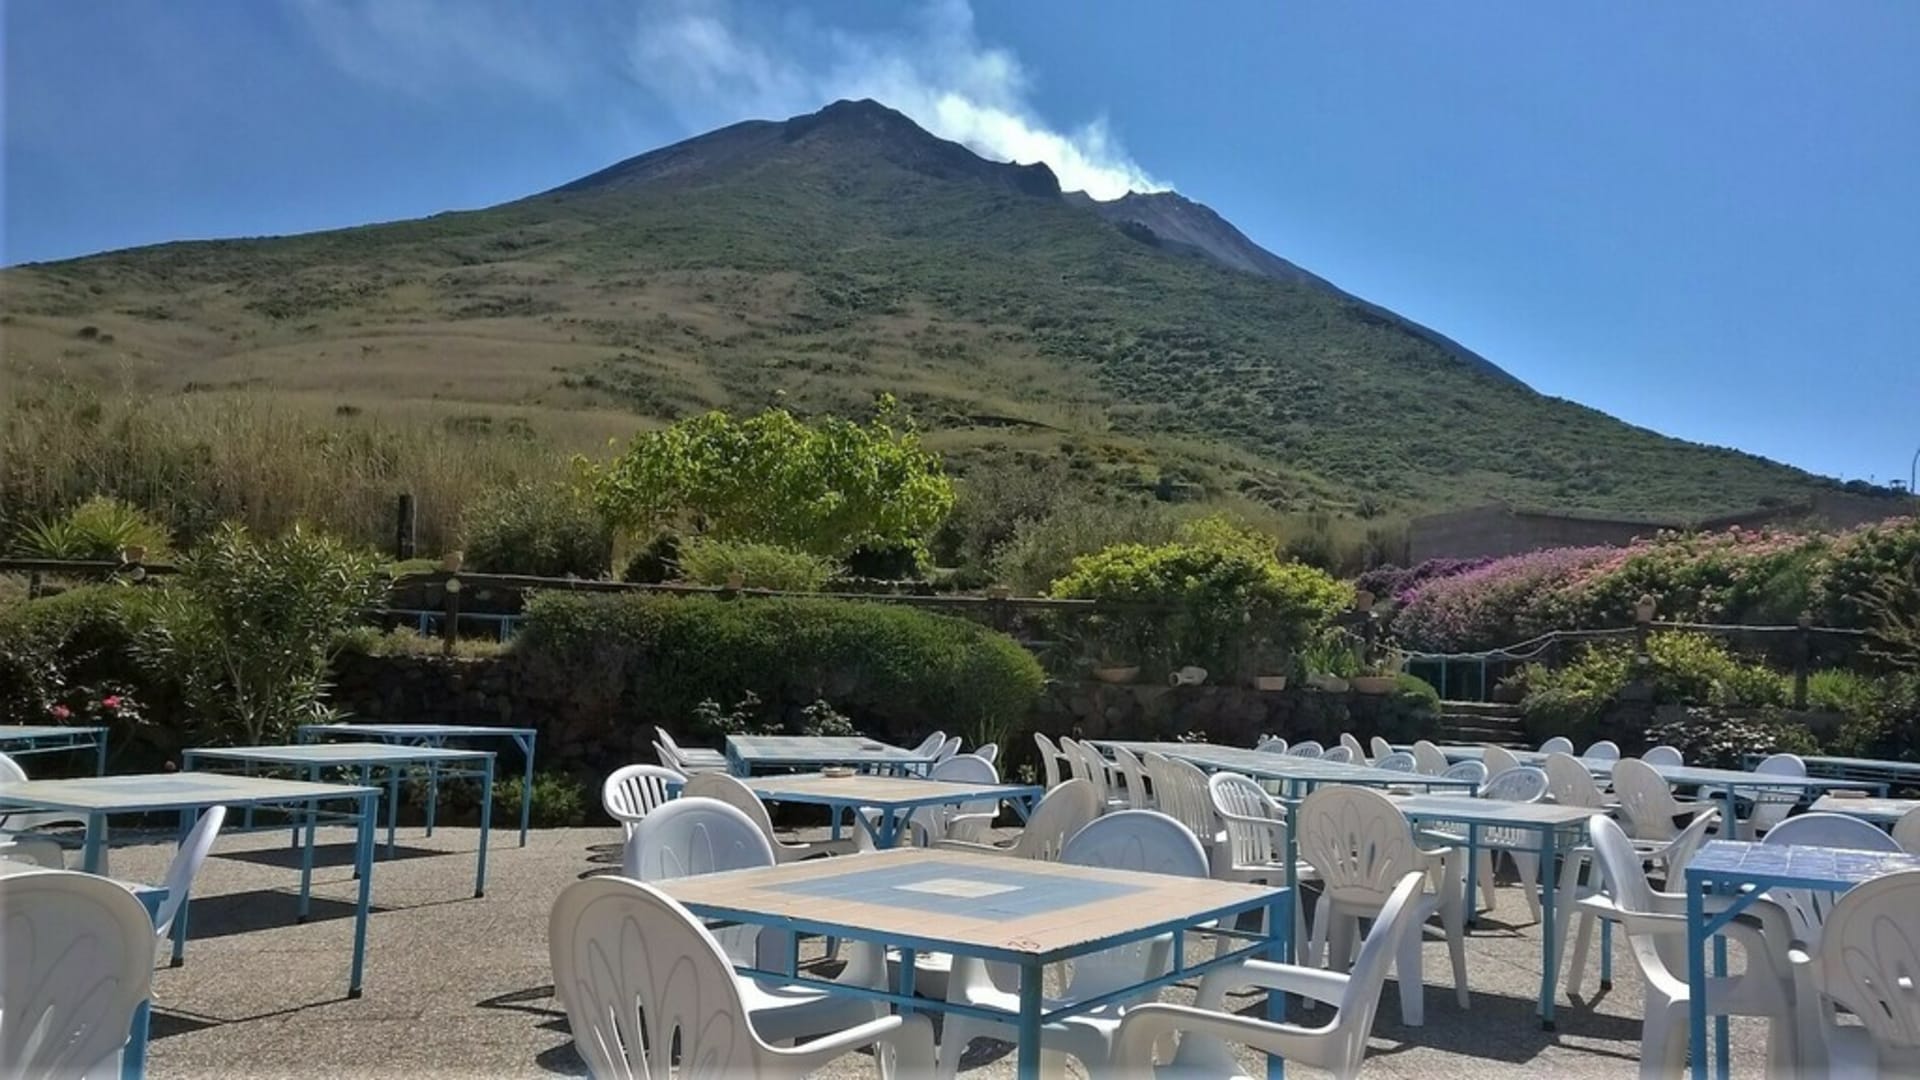 Sopka Stromboli